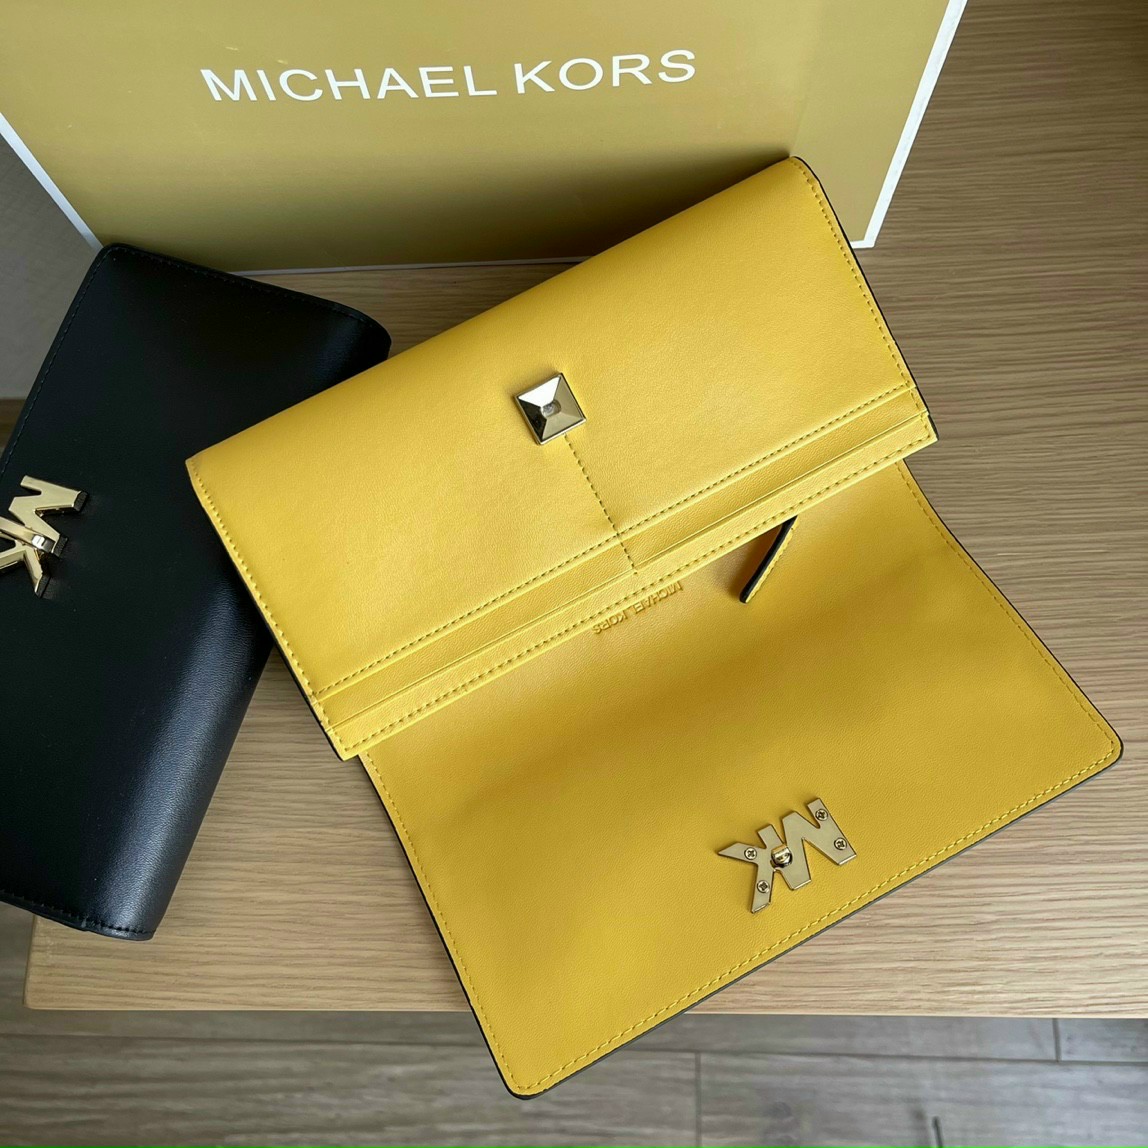 Ví MK nữ dài cao cấp | Bóp đựng tiền Michael Kors Signature Wallet Bag